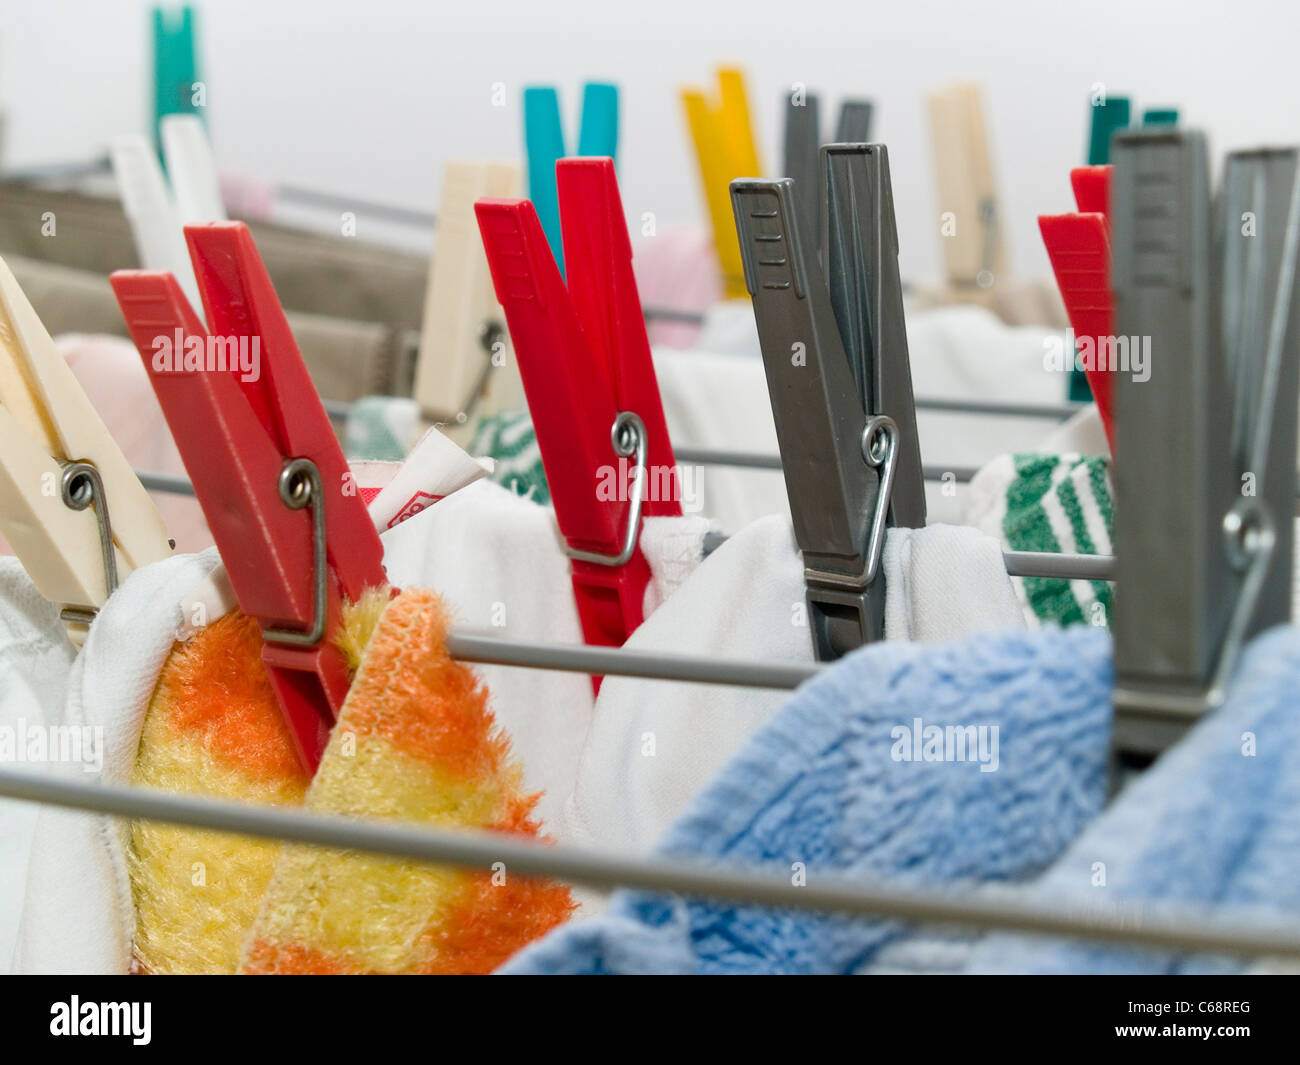 Wäsche hängt festgeklammert auf dem Wäscheständer | laundry hangs clipped on the clothes horse Stock Photo